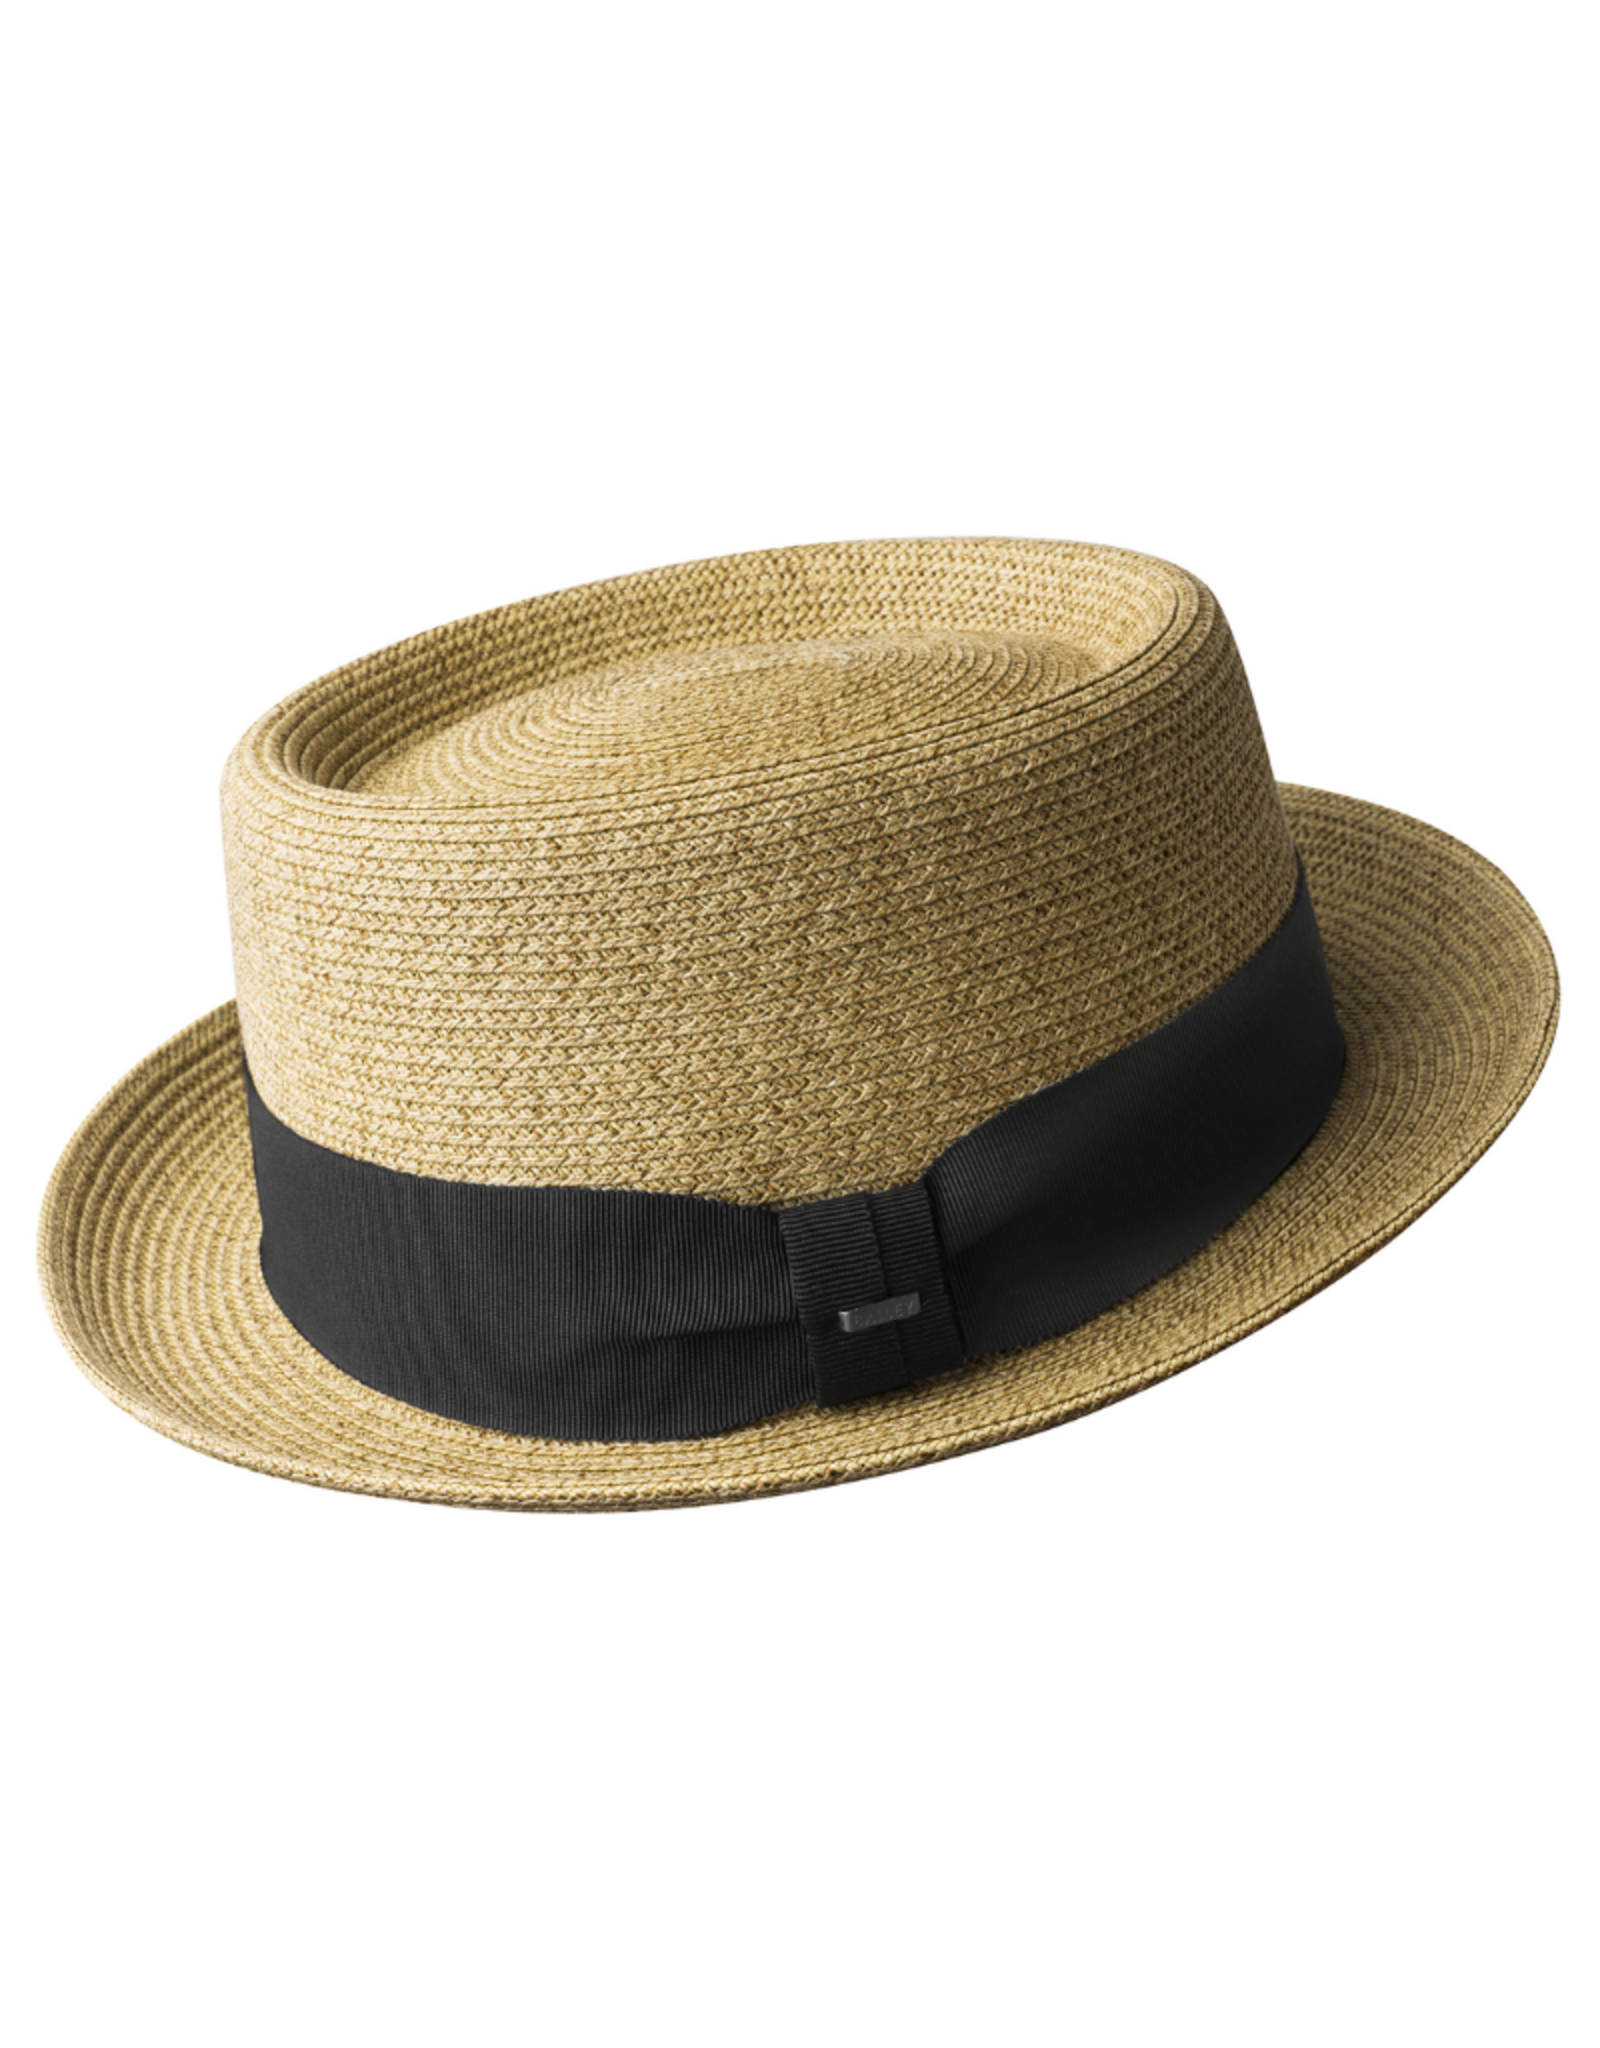 Bailey Hat Co. HAT-PORKPIE "WAITS" BRAID